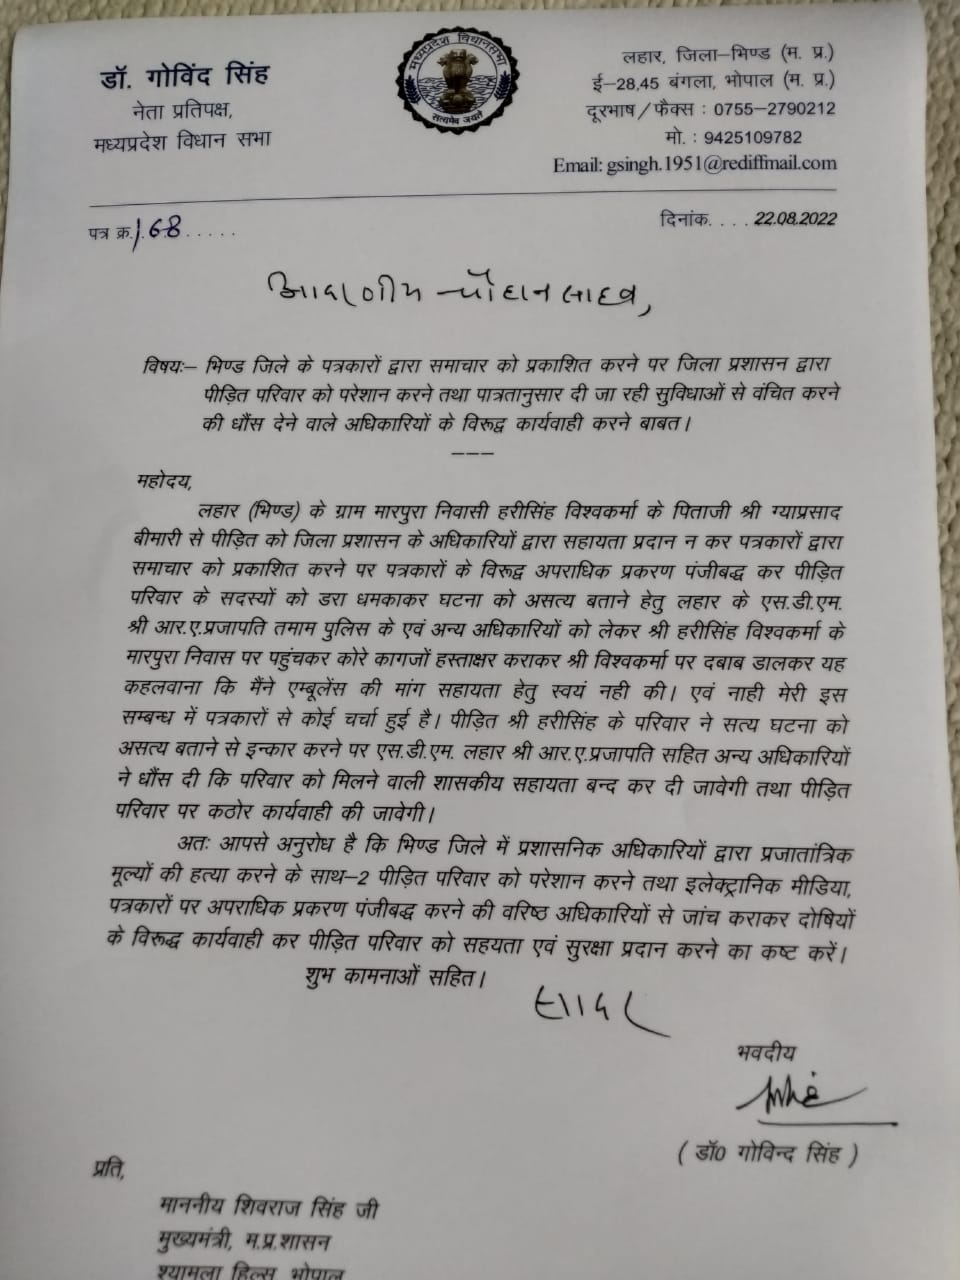 नेता प्रतिपक्ष डॉ गोविंद सिंह ने सीएम शिवराज सिंह को लिखा पत्र, दोषी प्रशासनिक अधिकारियों पर कार्रवाई का अनुरोध